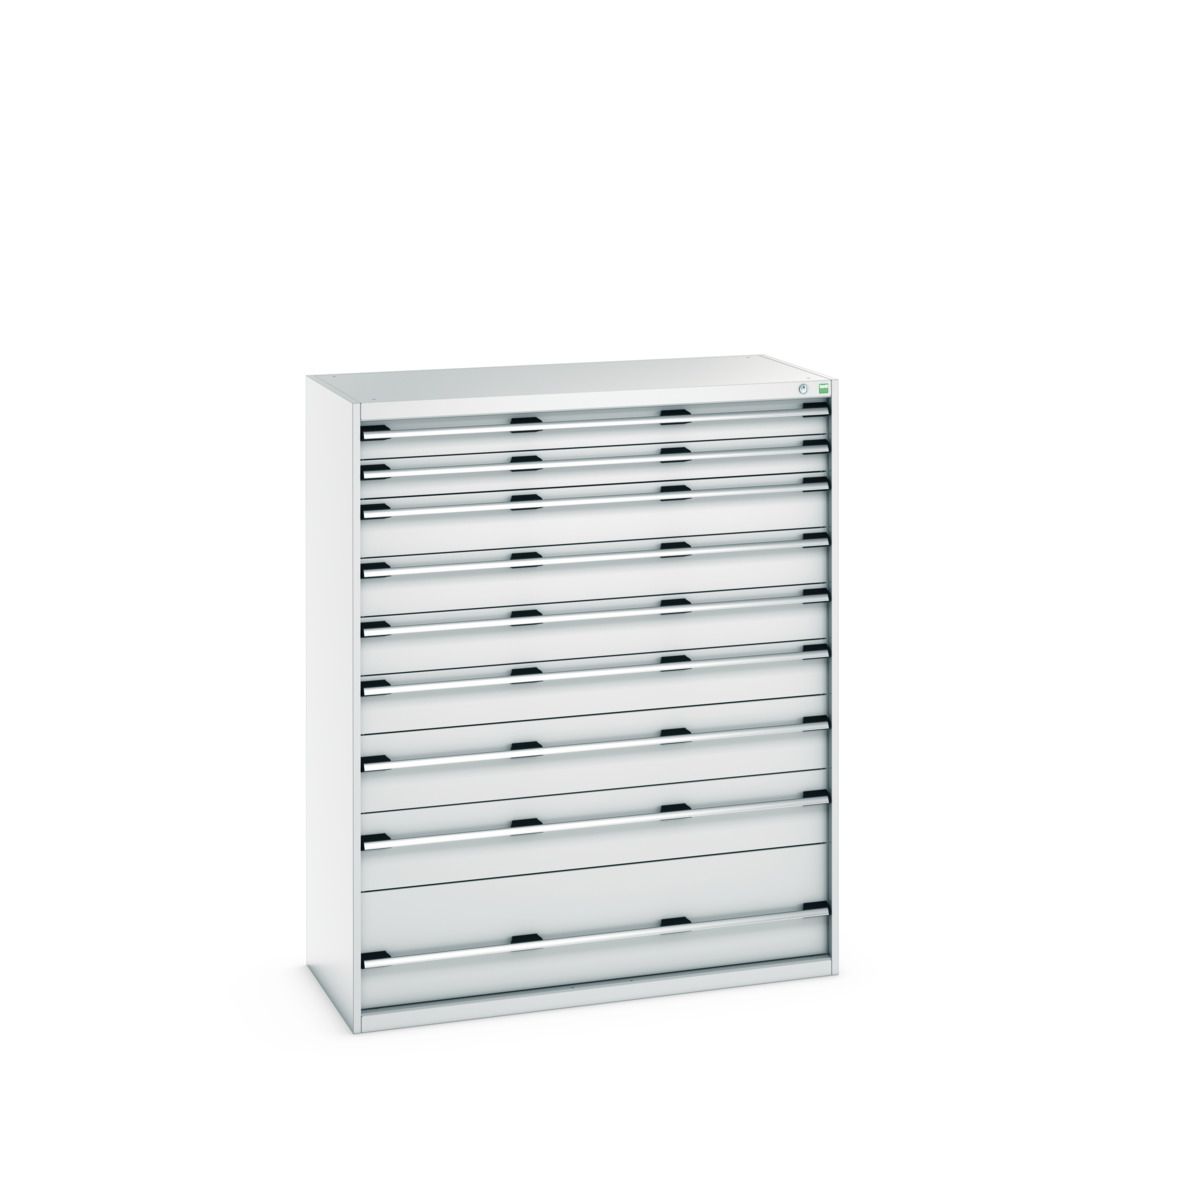 40022134.16V - cubio drawer cabinet